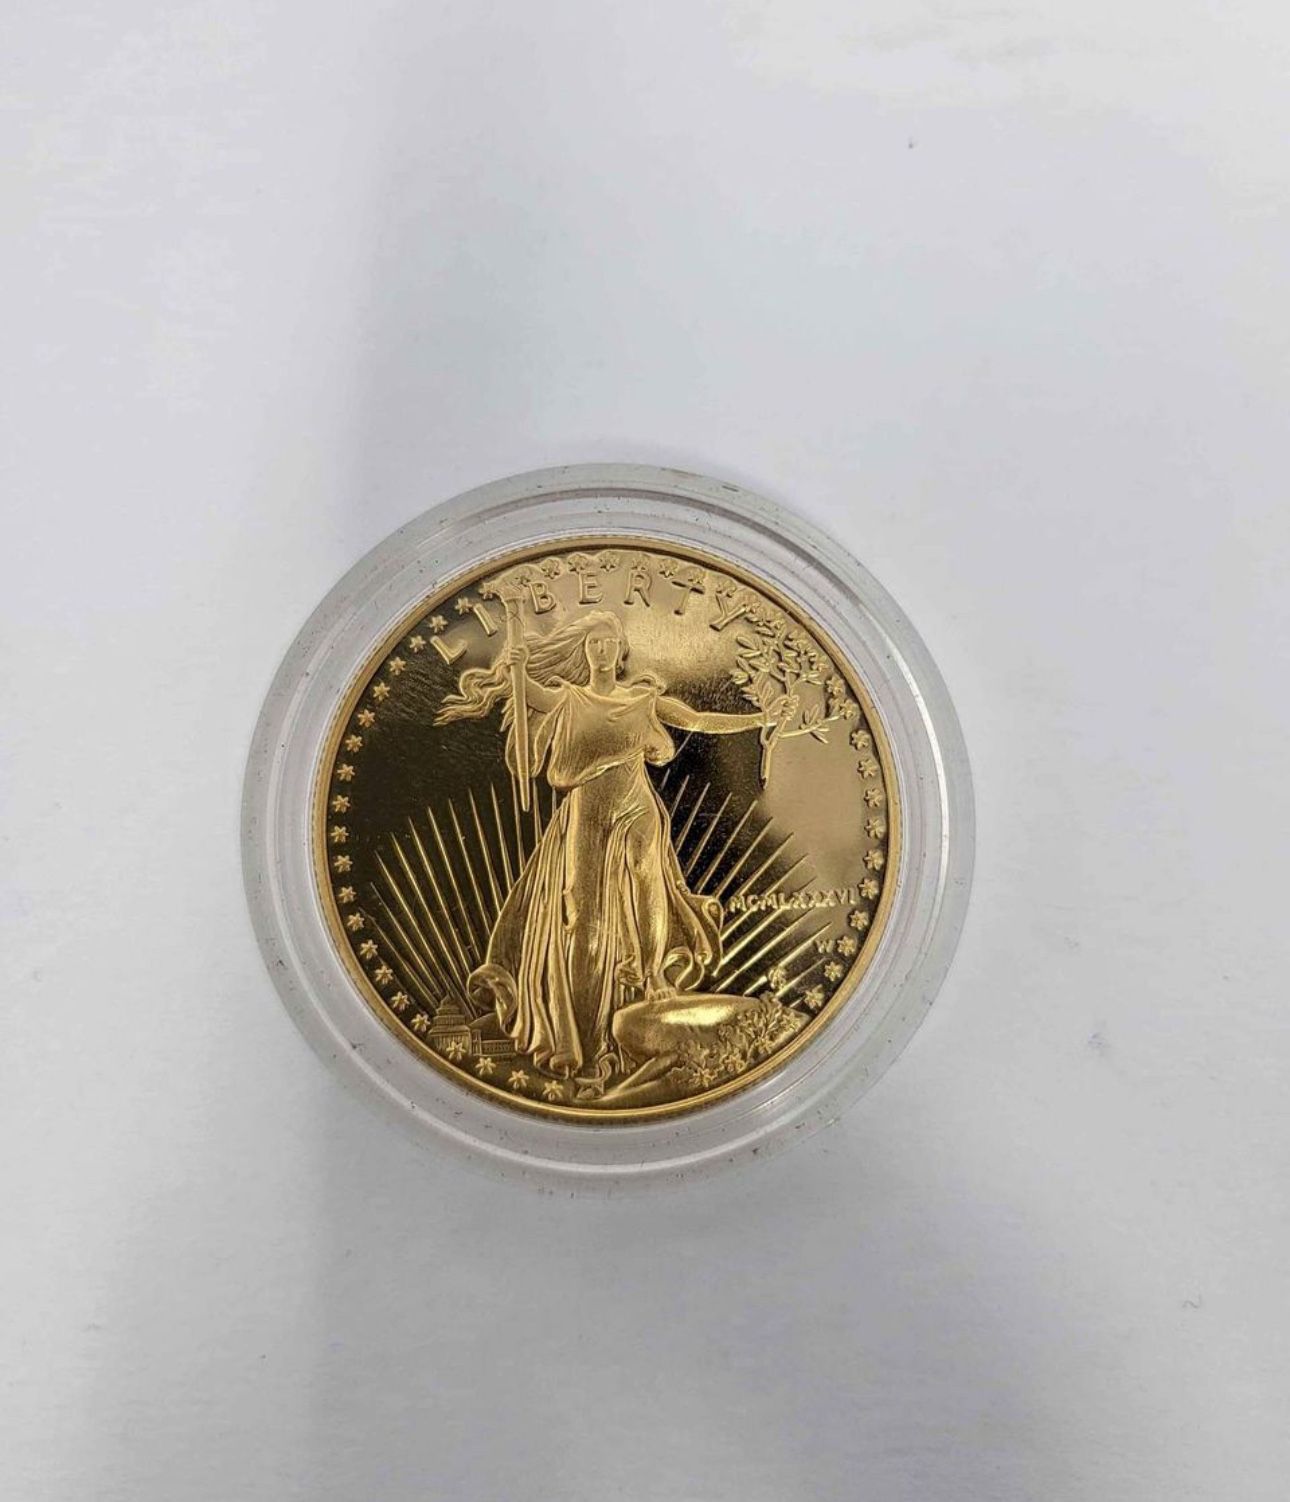 American eagle $50.00 gold coin 1oz fine gold